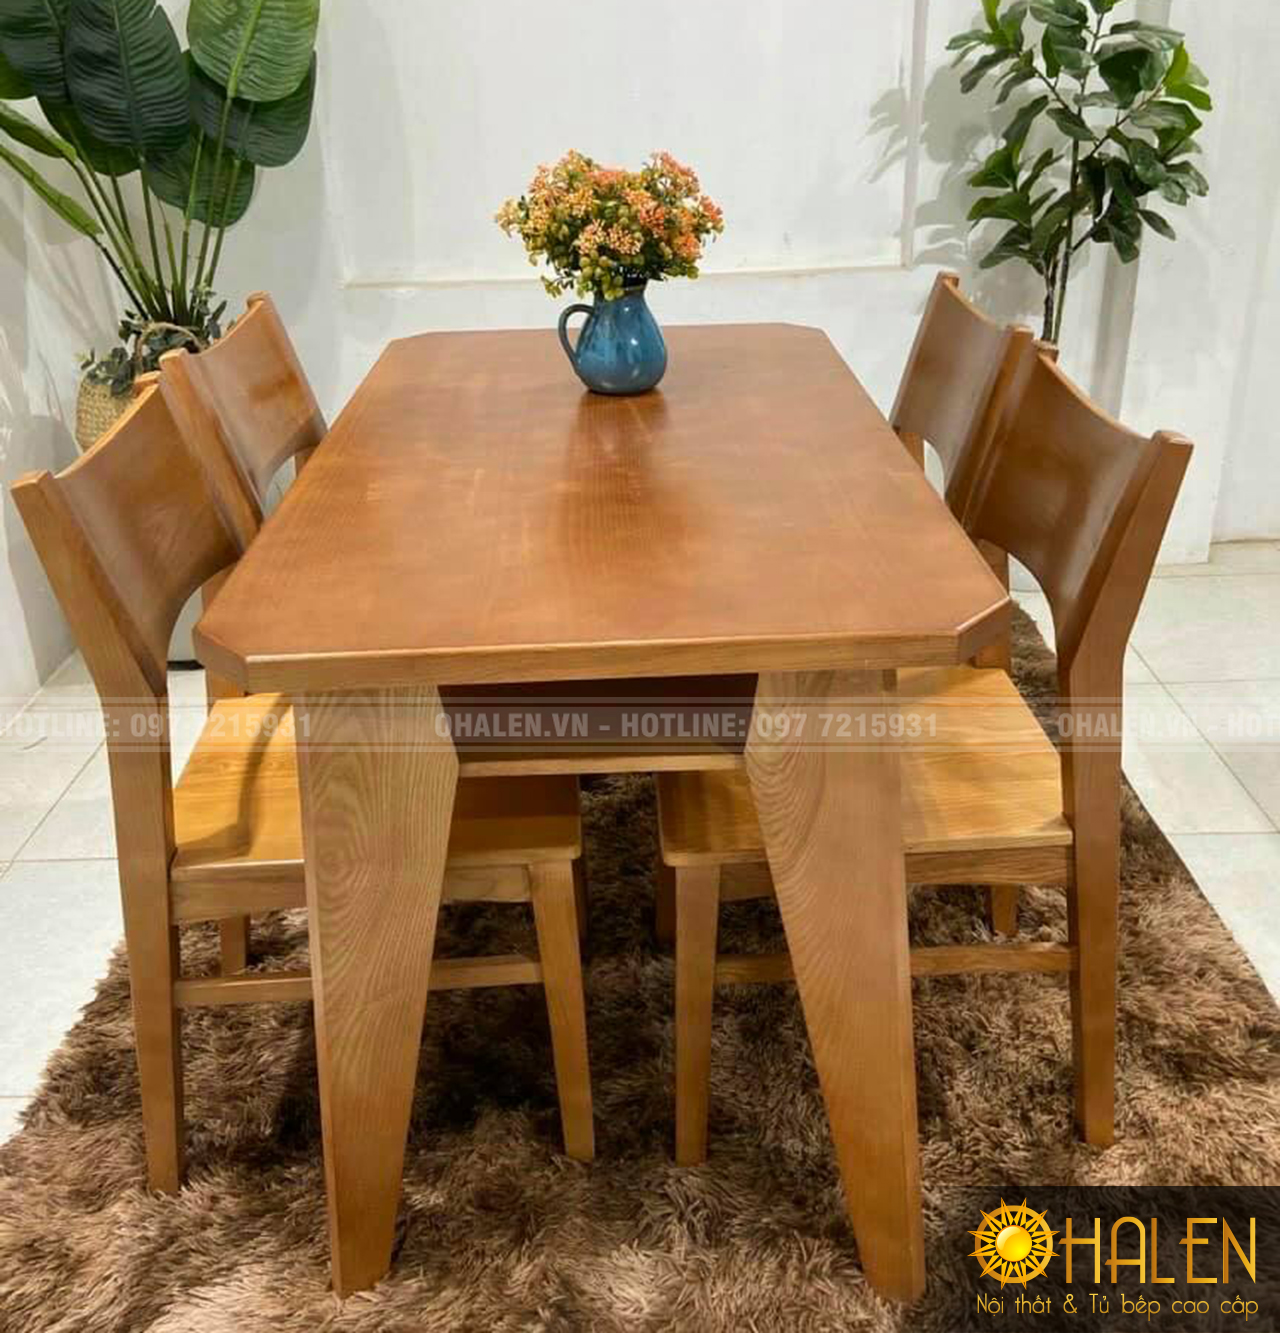 Thiết kế đơn giản, mẫu bàn ăn gỗ tự nhiên trên đây vẫn tạo nên những nét độc đáo, ấm cúng cho không gian nhà bếp